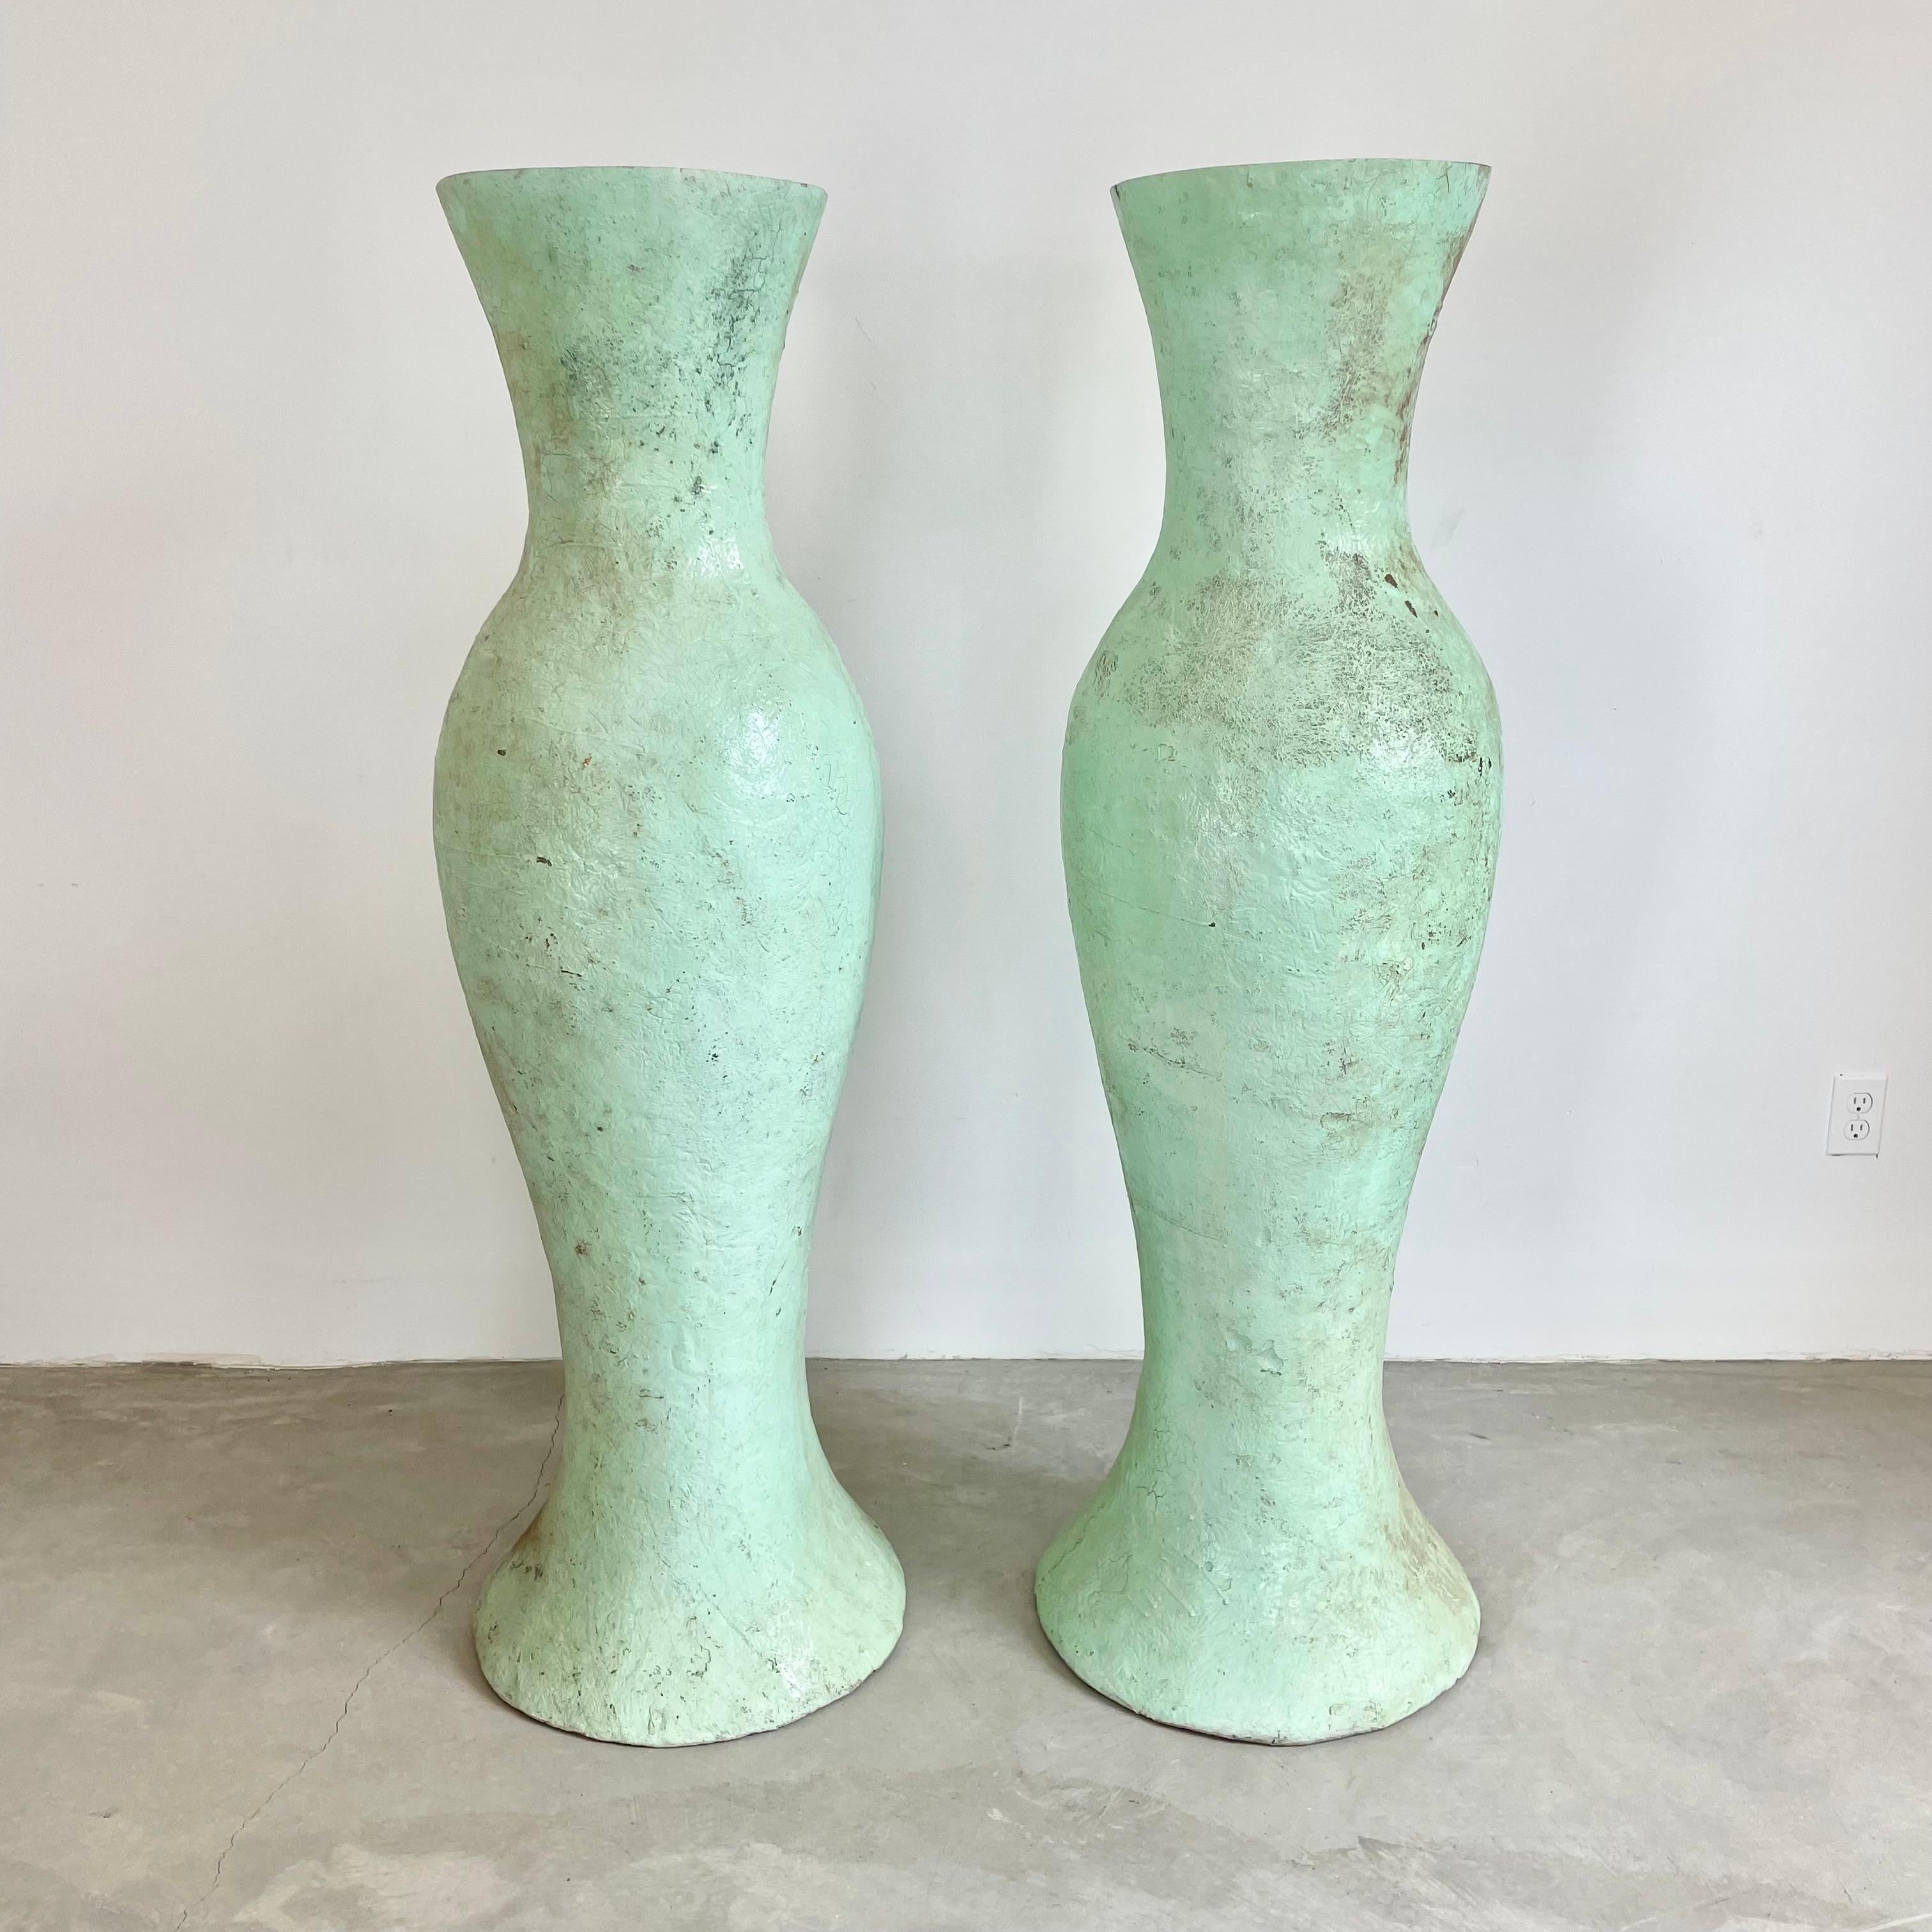 Wunderschönes Set monumentaler Fiberglasvasen aus Belgien, ca. 1960er Jahre. Beide Vasen sind 1,50 m hoch, mintgrün bemalt und haben eine unterschiedliche, aber ebenso einzigartige Patina. Erstaunliche Präsenz. Da diese Pflanzgefäße sehr leicht sind